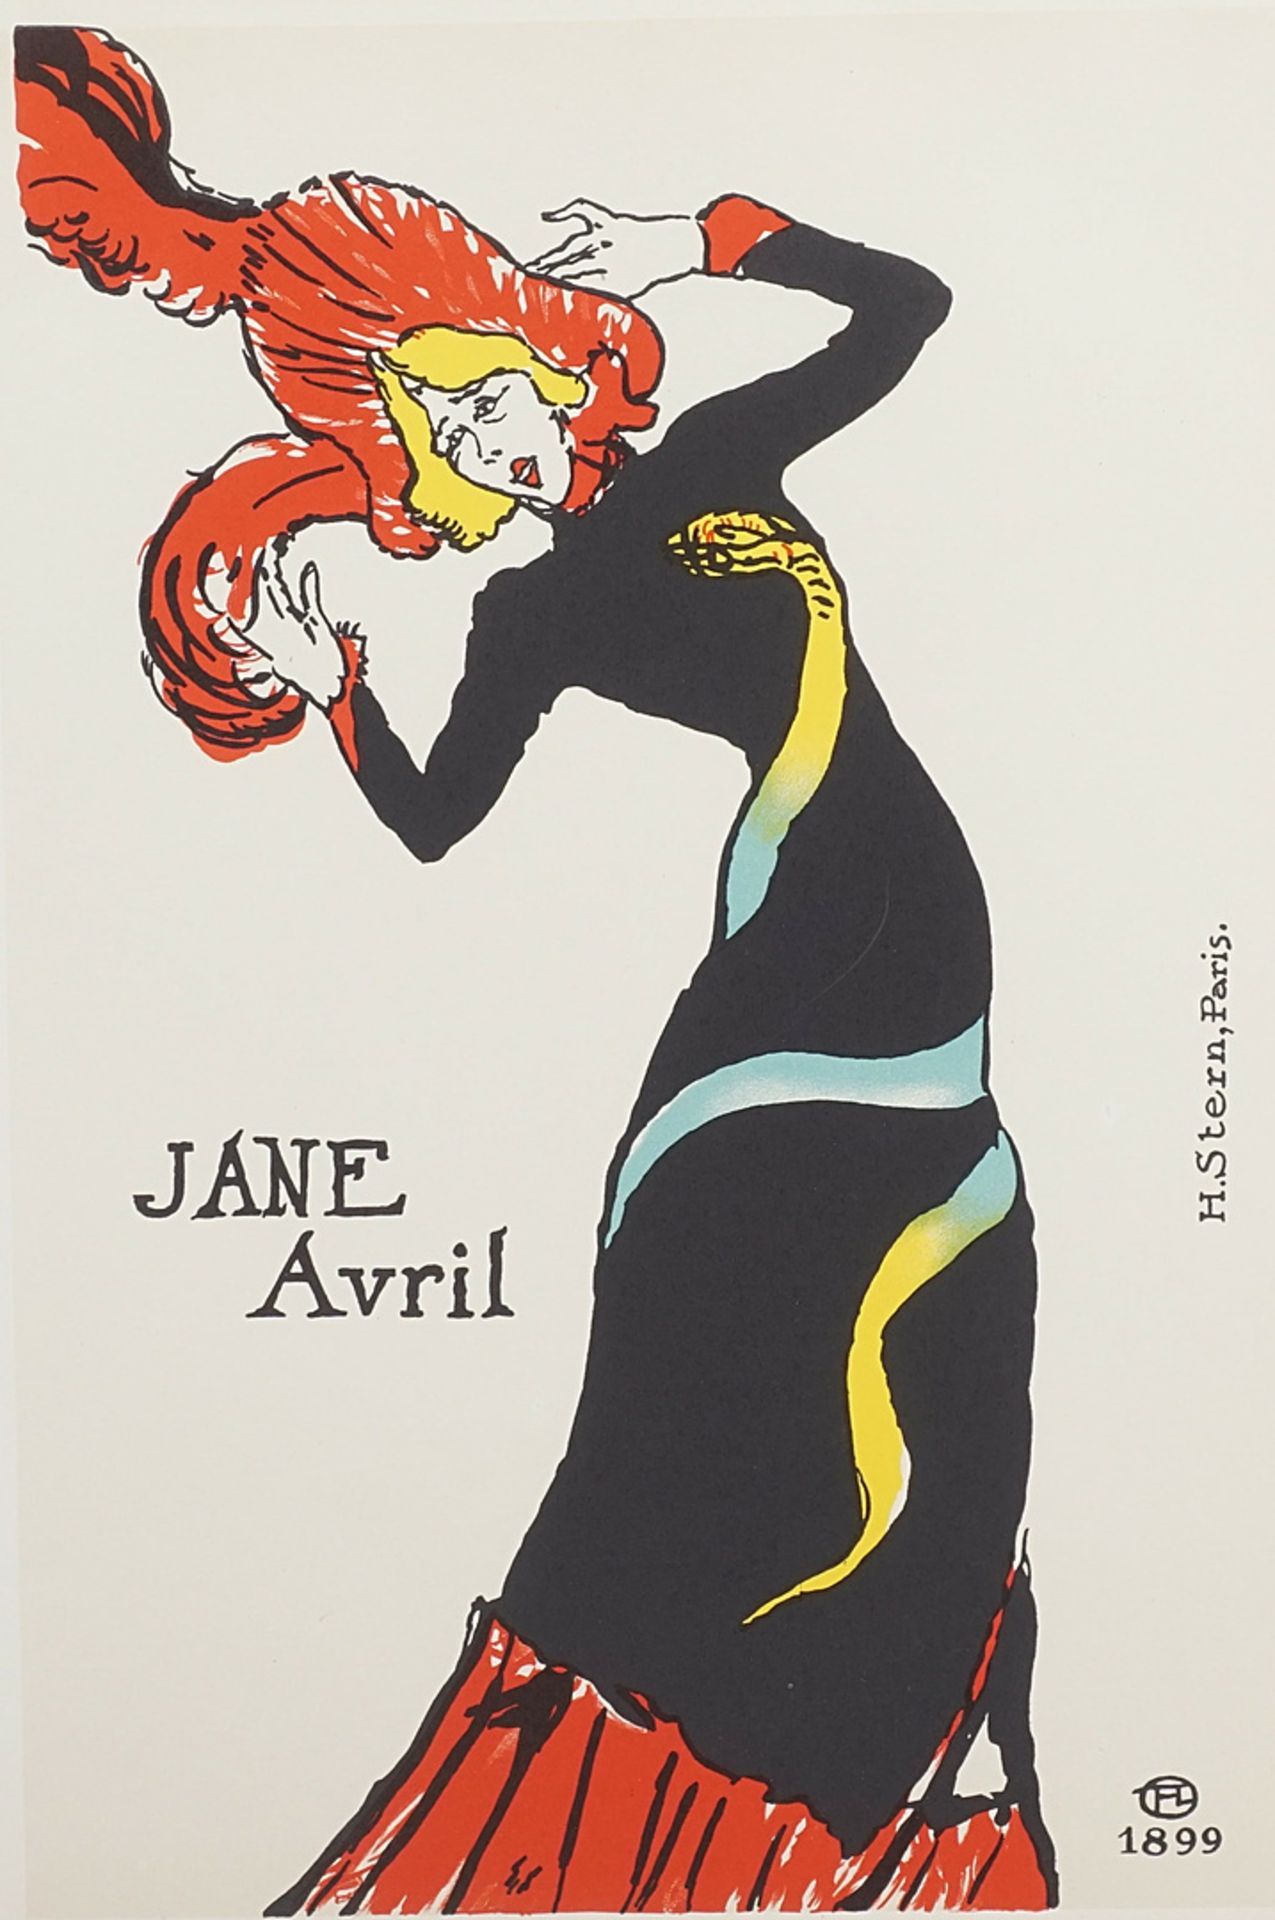 Henri de Toulouse-Lautrec (1864-1901), "Jane Avril"